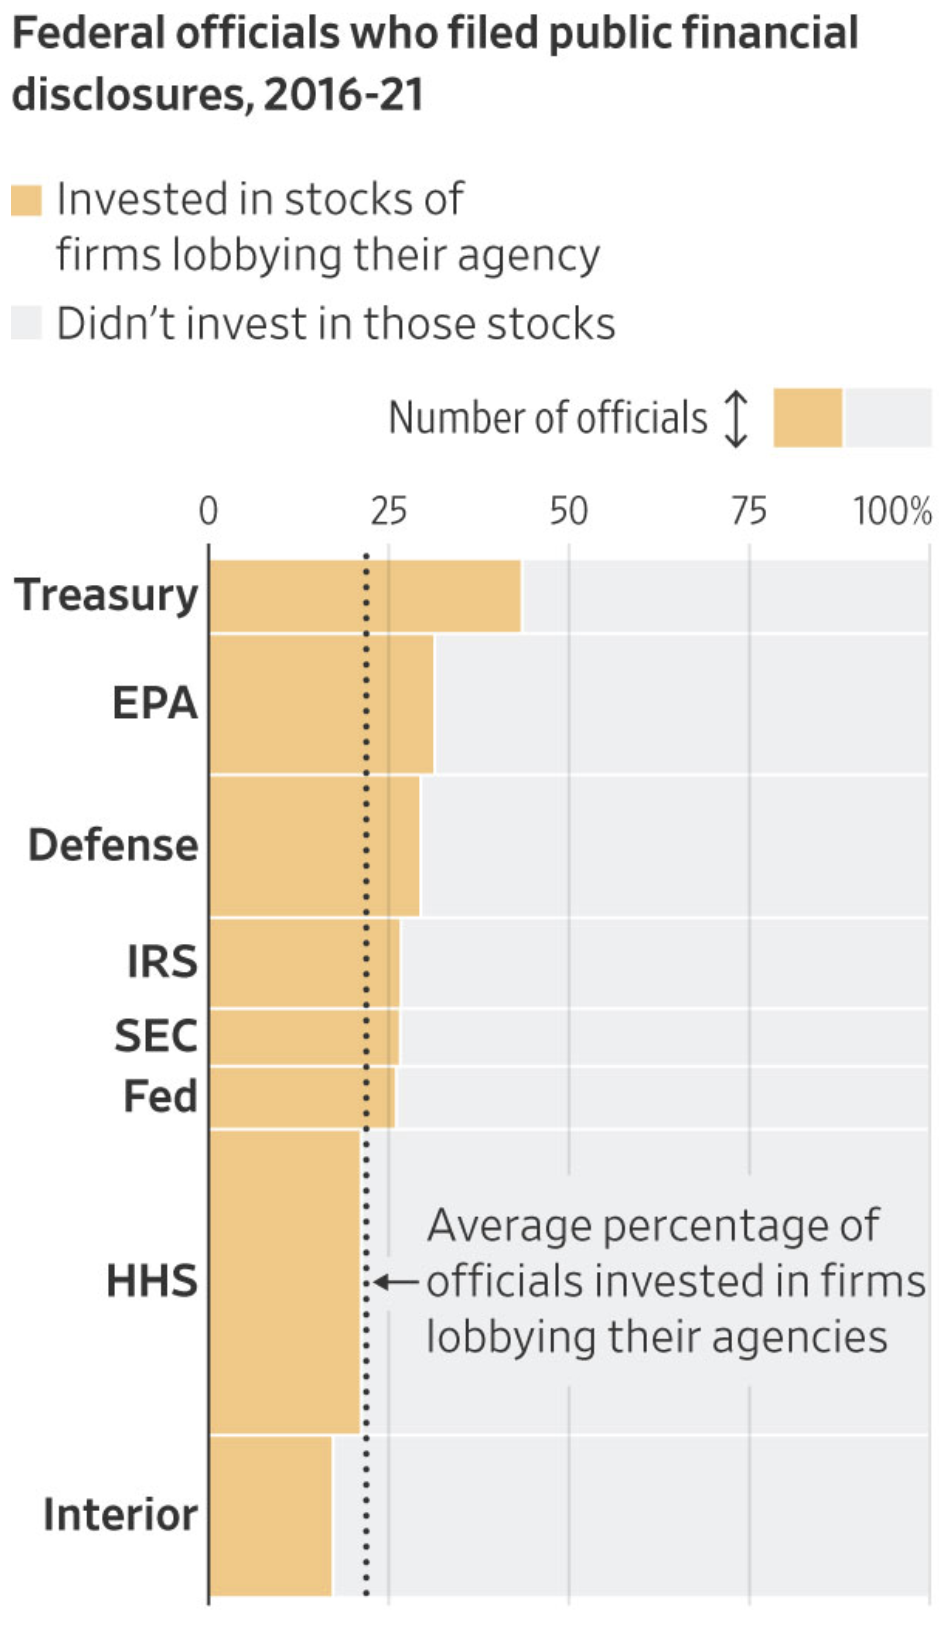 Οι υπάλληλοι της SEC επένδυσαν σε εταιρείες που ασκούν πίεση στον οργανισμό τους, το 2016-2021